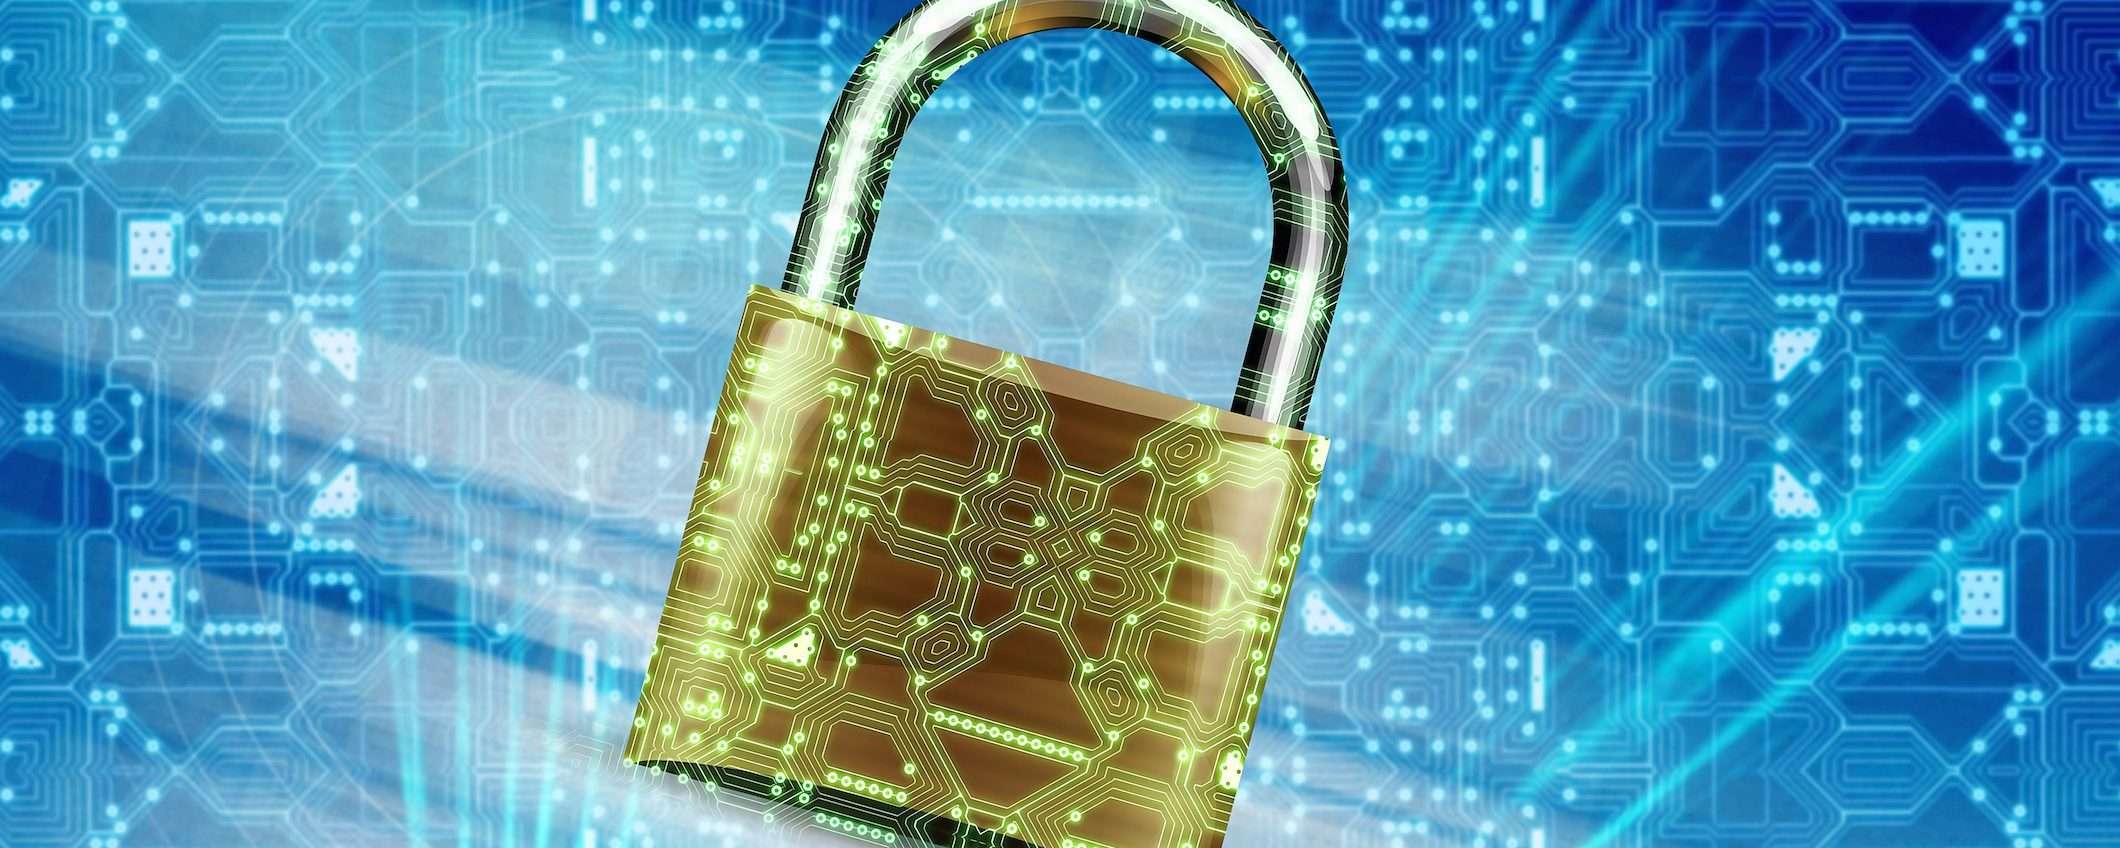 Sicurezza online: 10 regole per proteggersi dai pericoli in rete